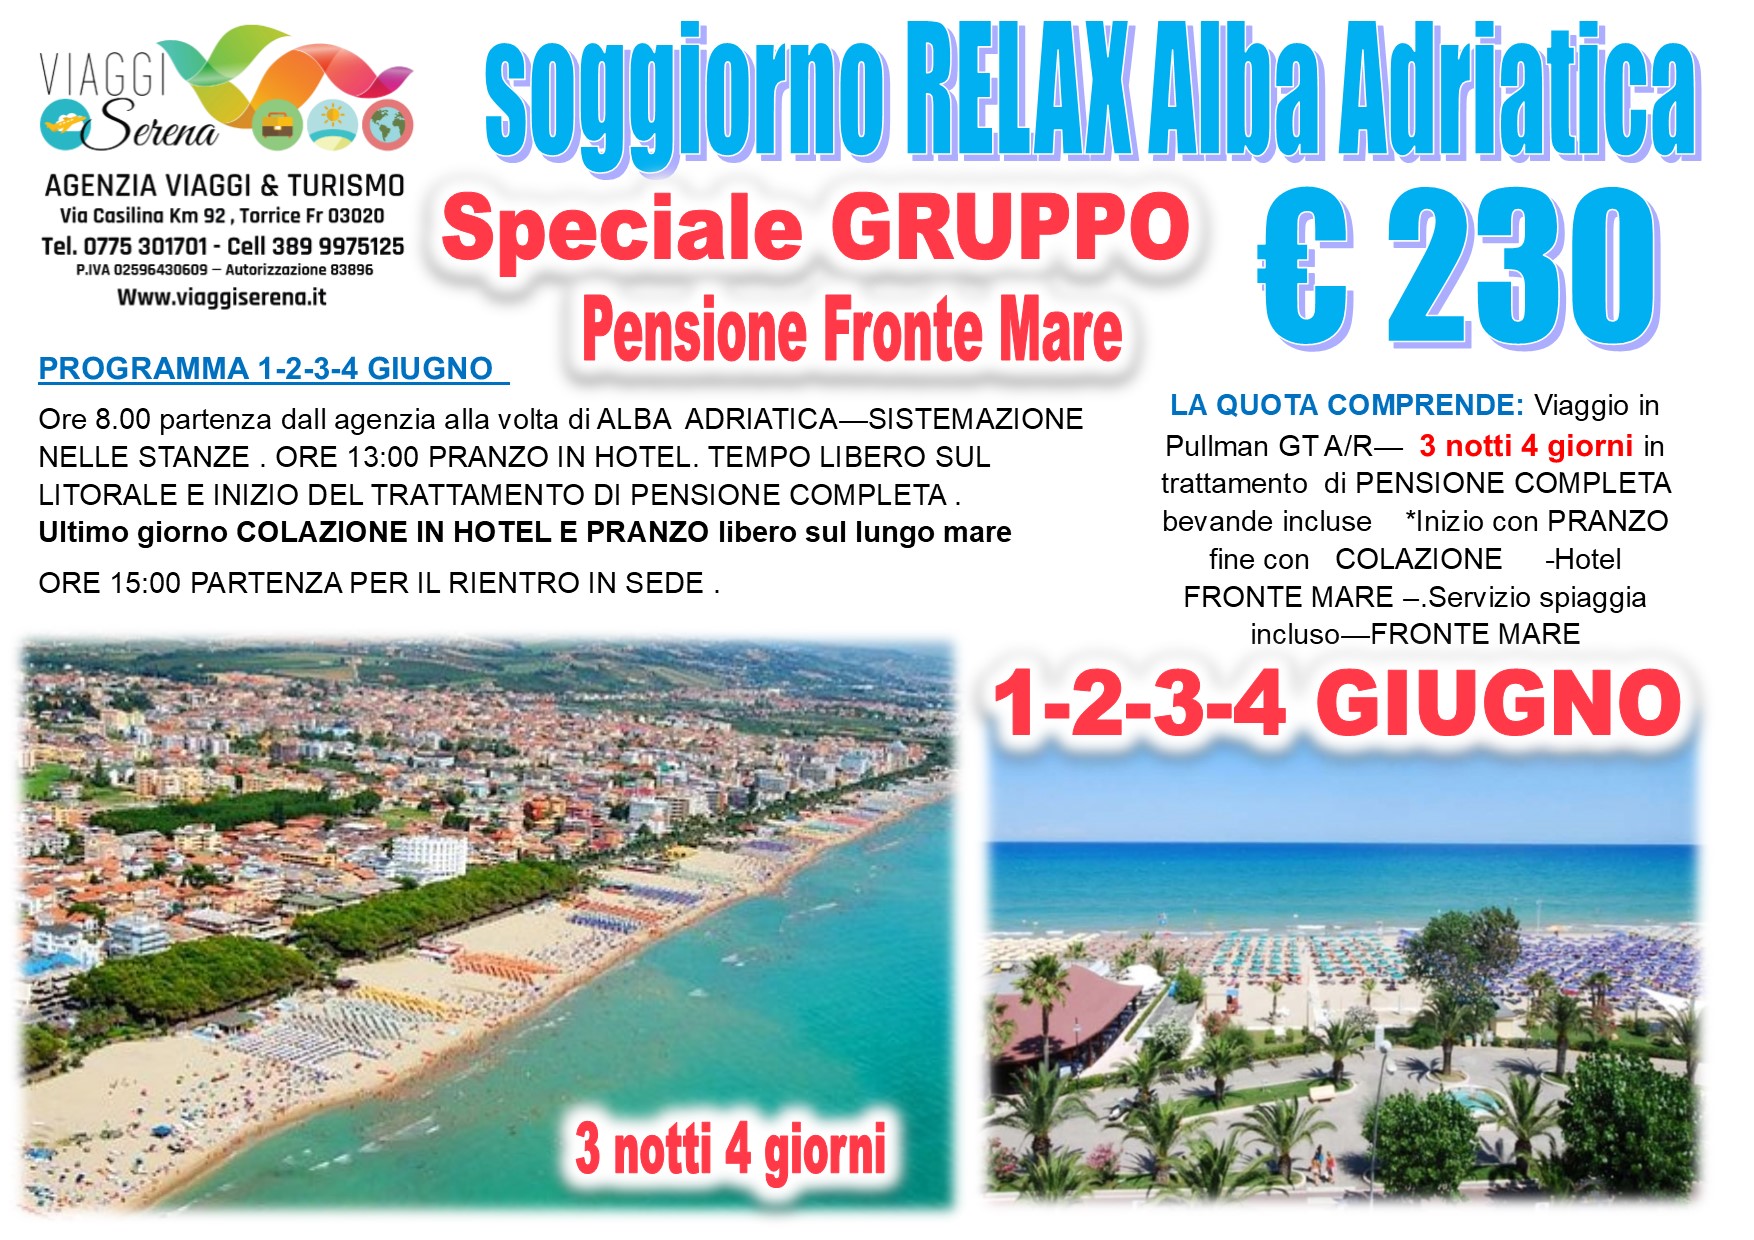 Viaggi di Gruppo: Alba Adriatica relax fronte mare 1-2-3-4 Giugno €230,00